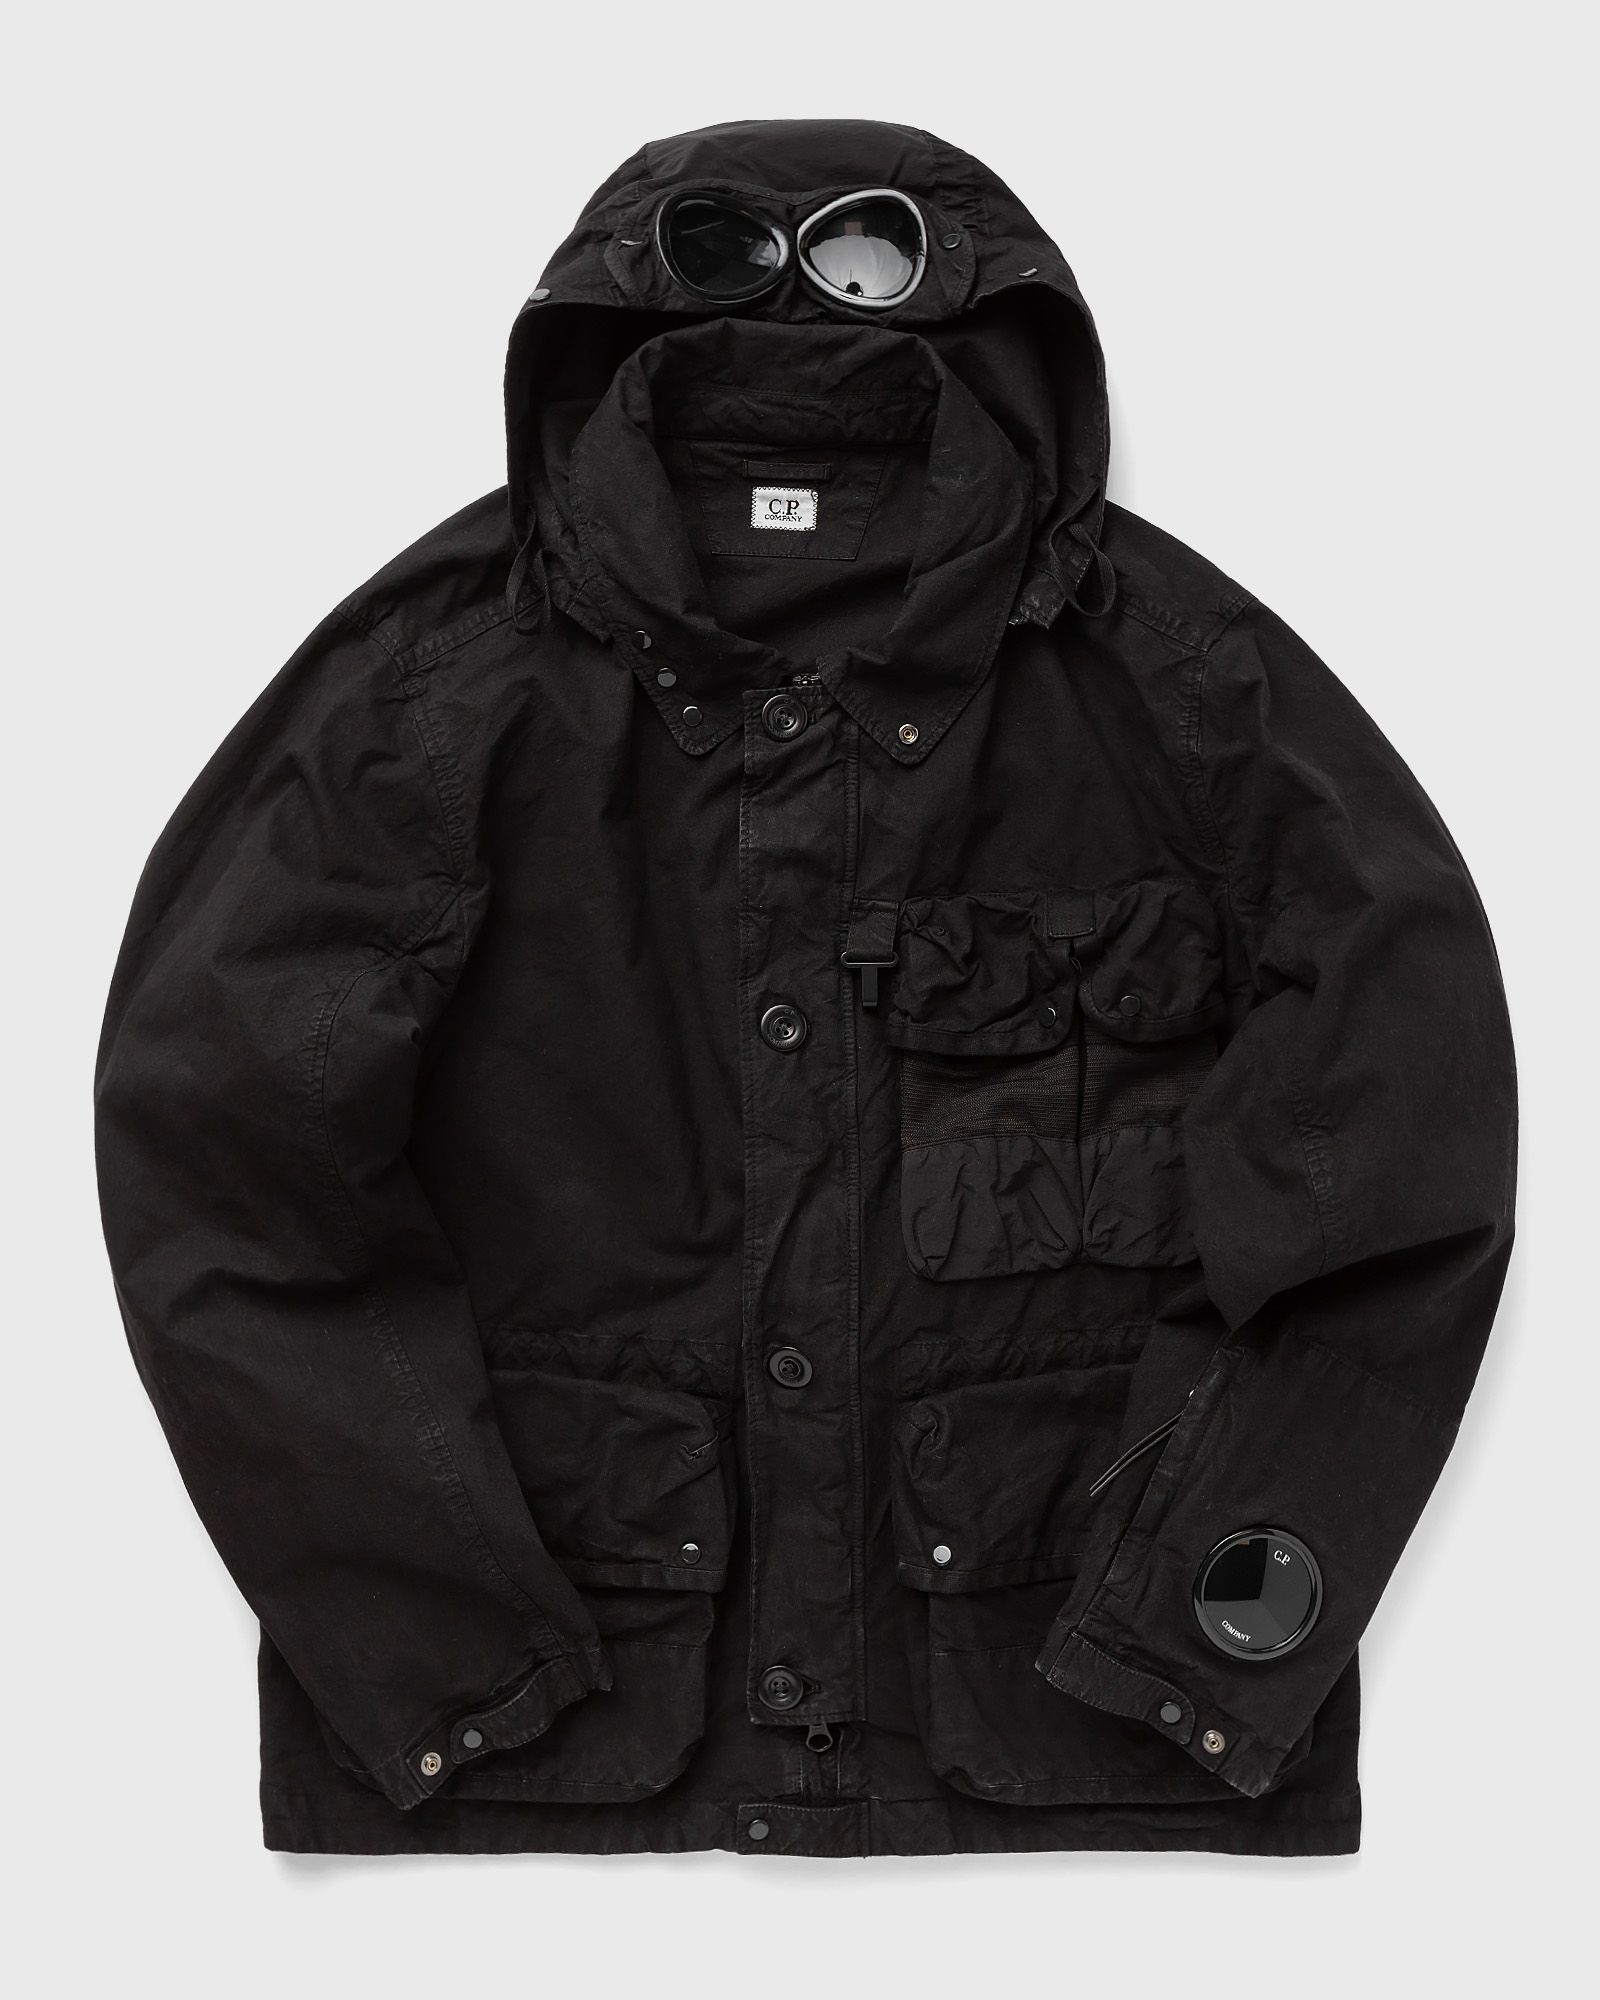 C.P. Company - outerwear - medium jacket men windbreaker black in größe:m